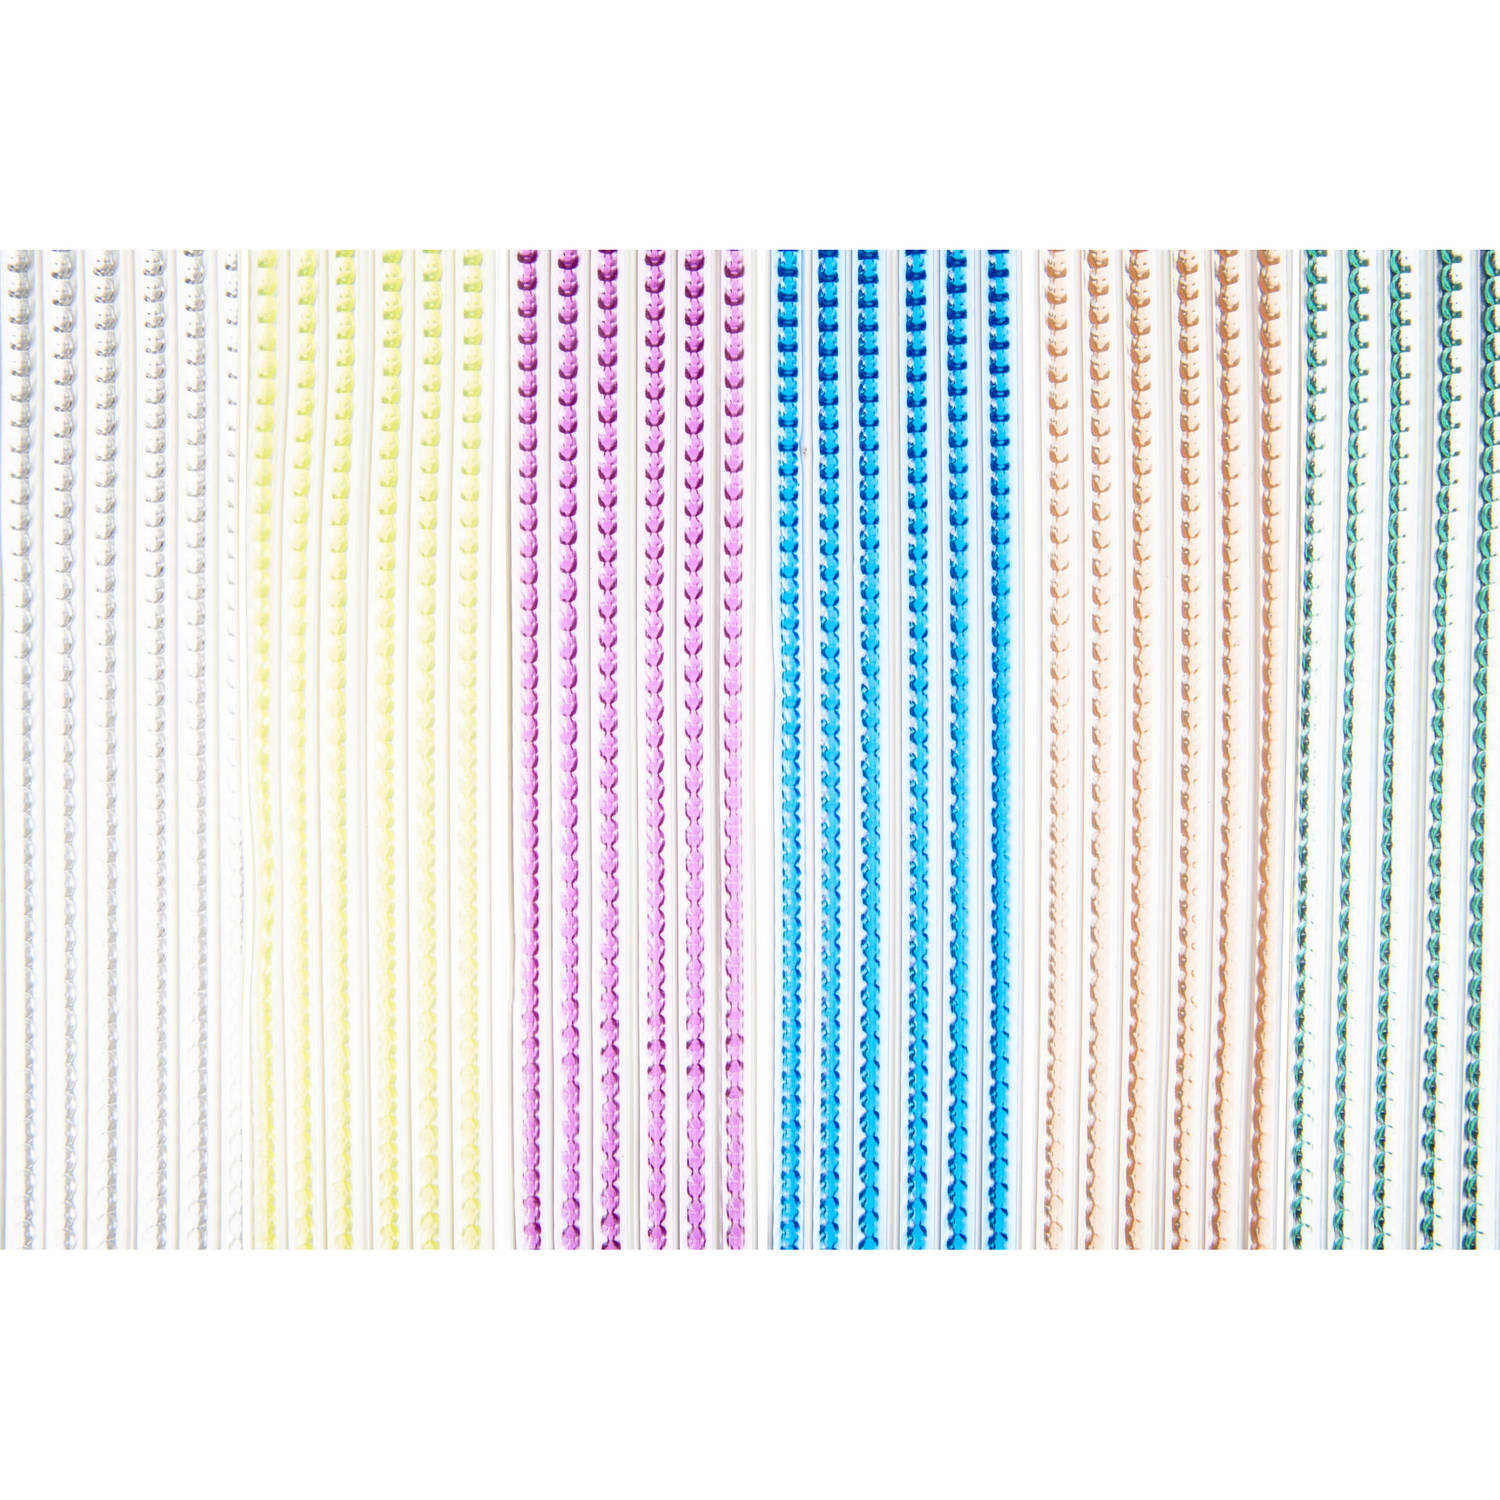 Multicolor kunststof vliegen/insecten kralen gordijn 93 x 220 cm - Vliegengordijnen